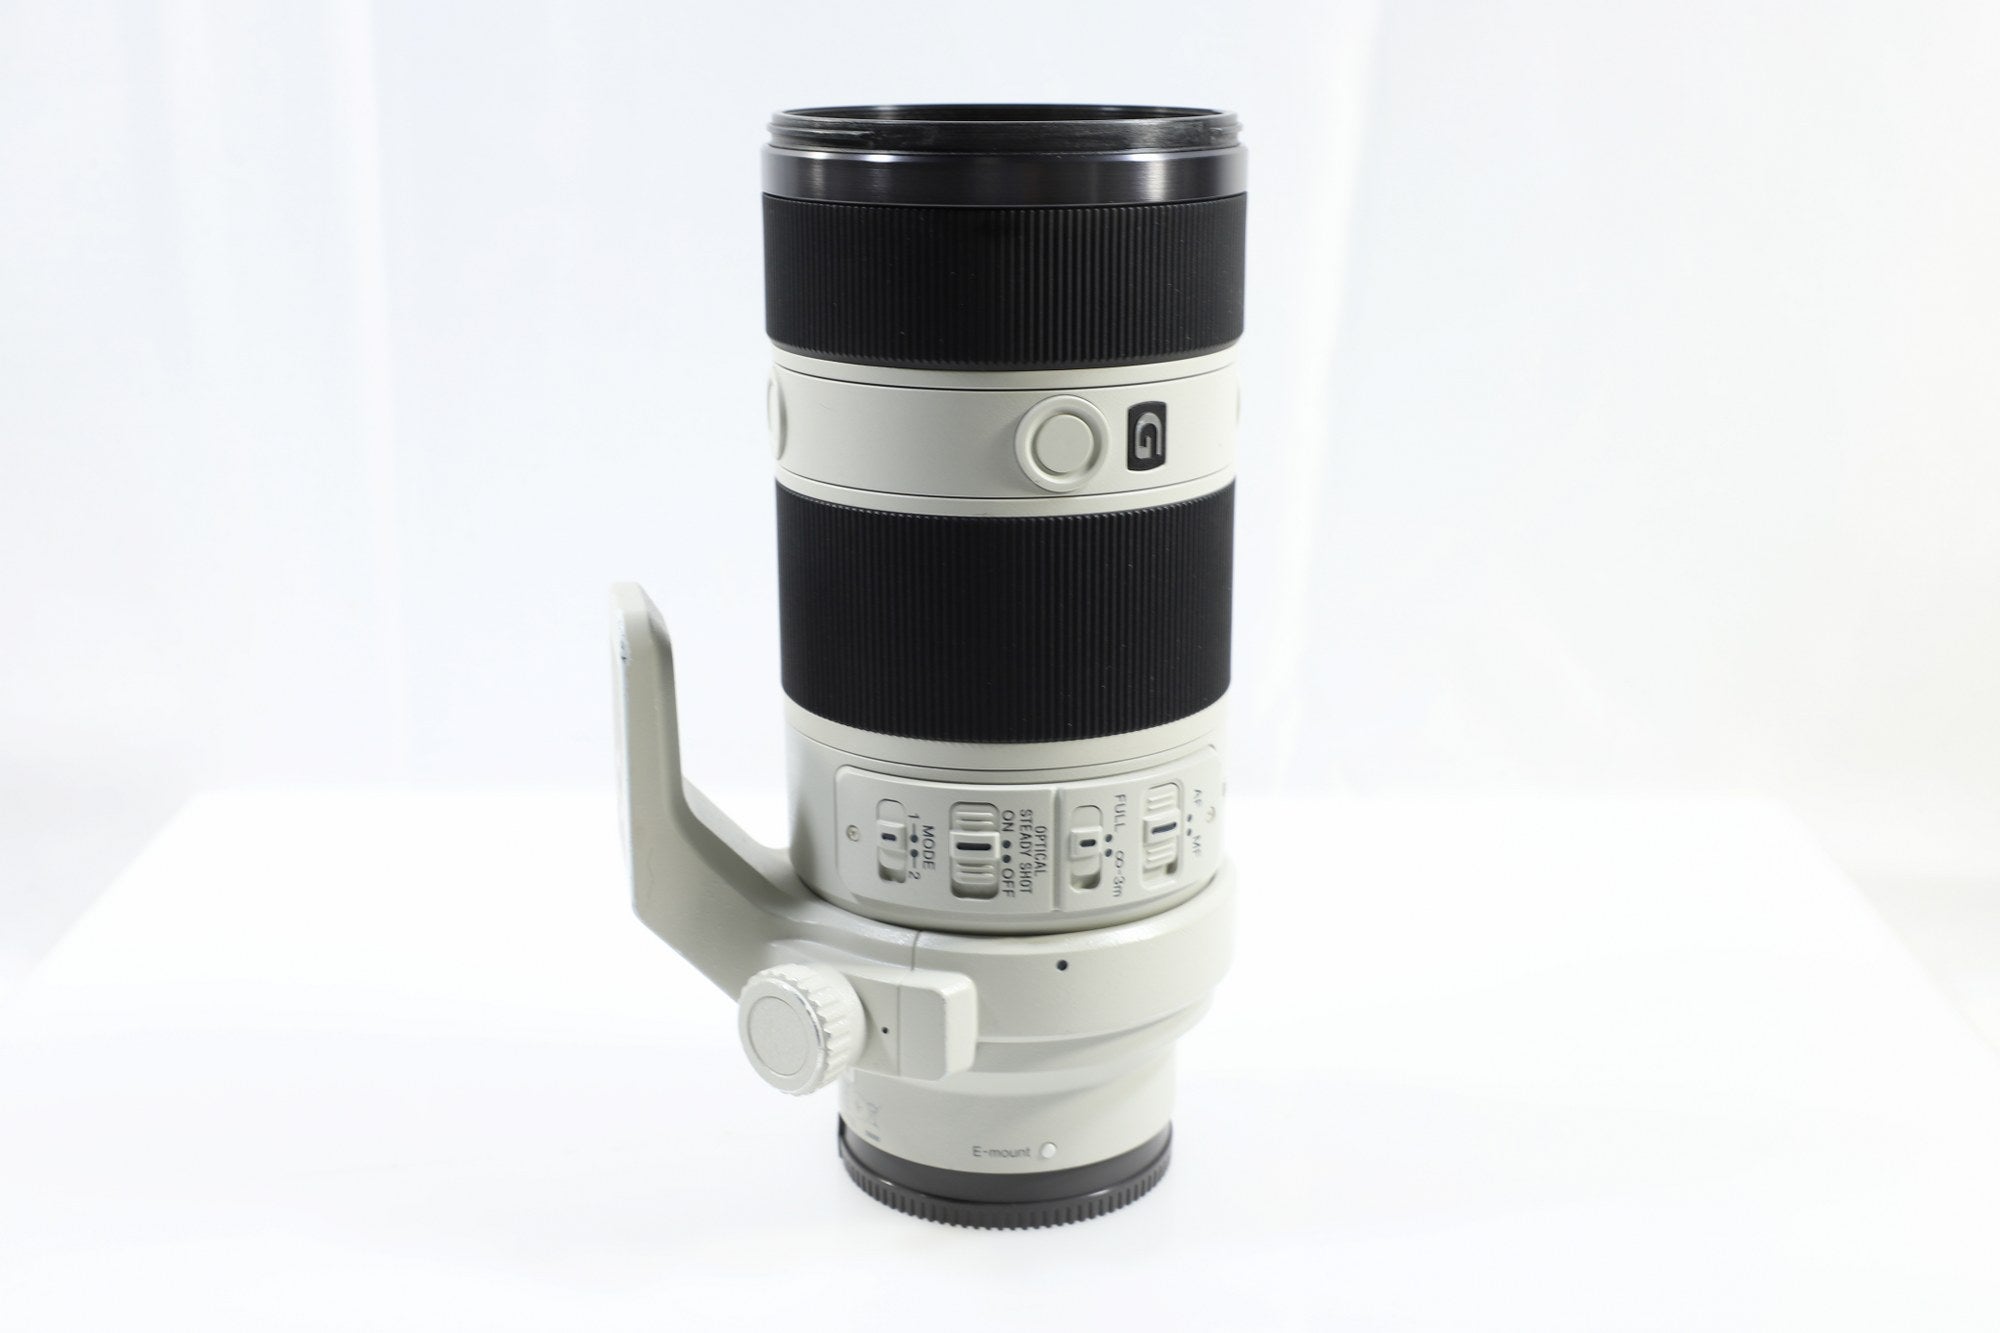 Sony FE 70-200mm f/4 G OSS Lens - E-Mount Lens/Full-Frame Format - DOKAN